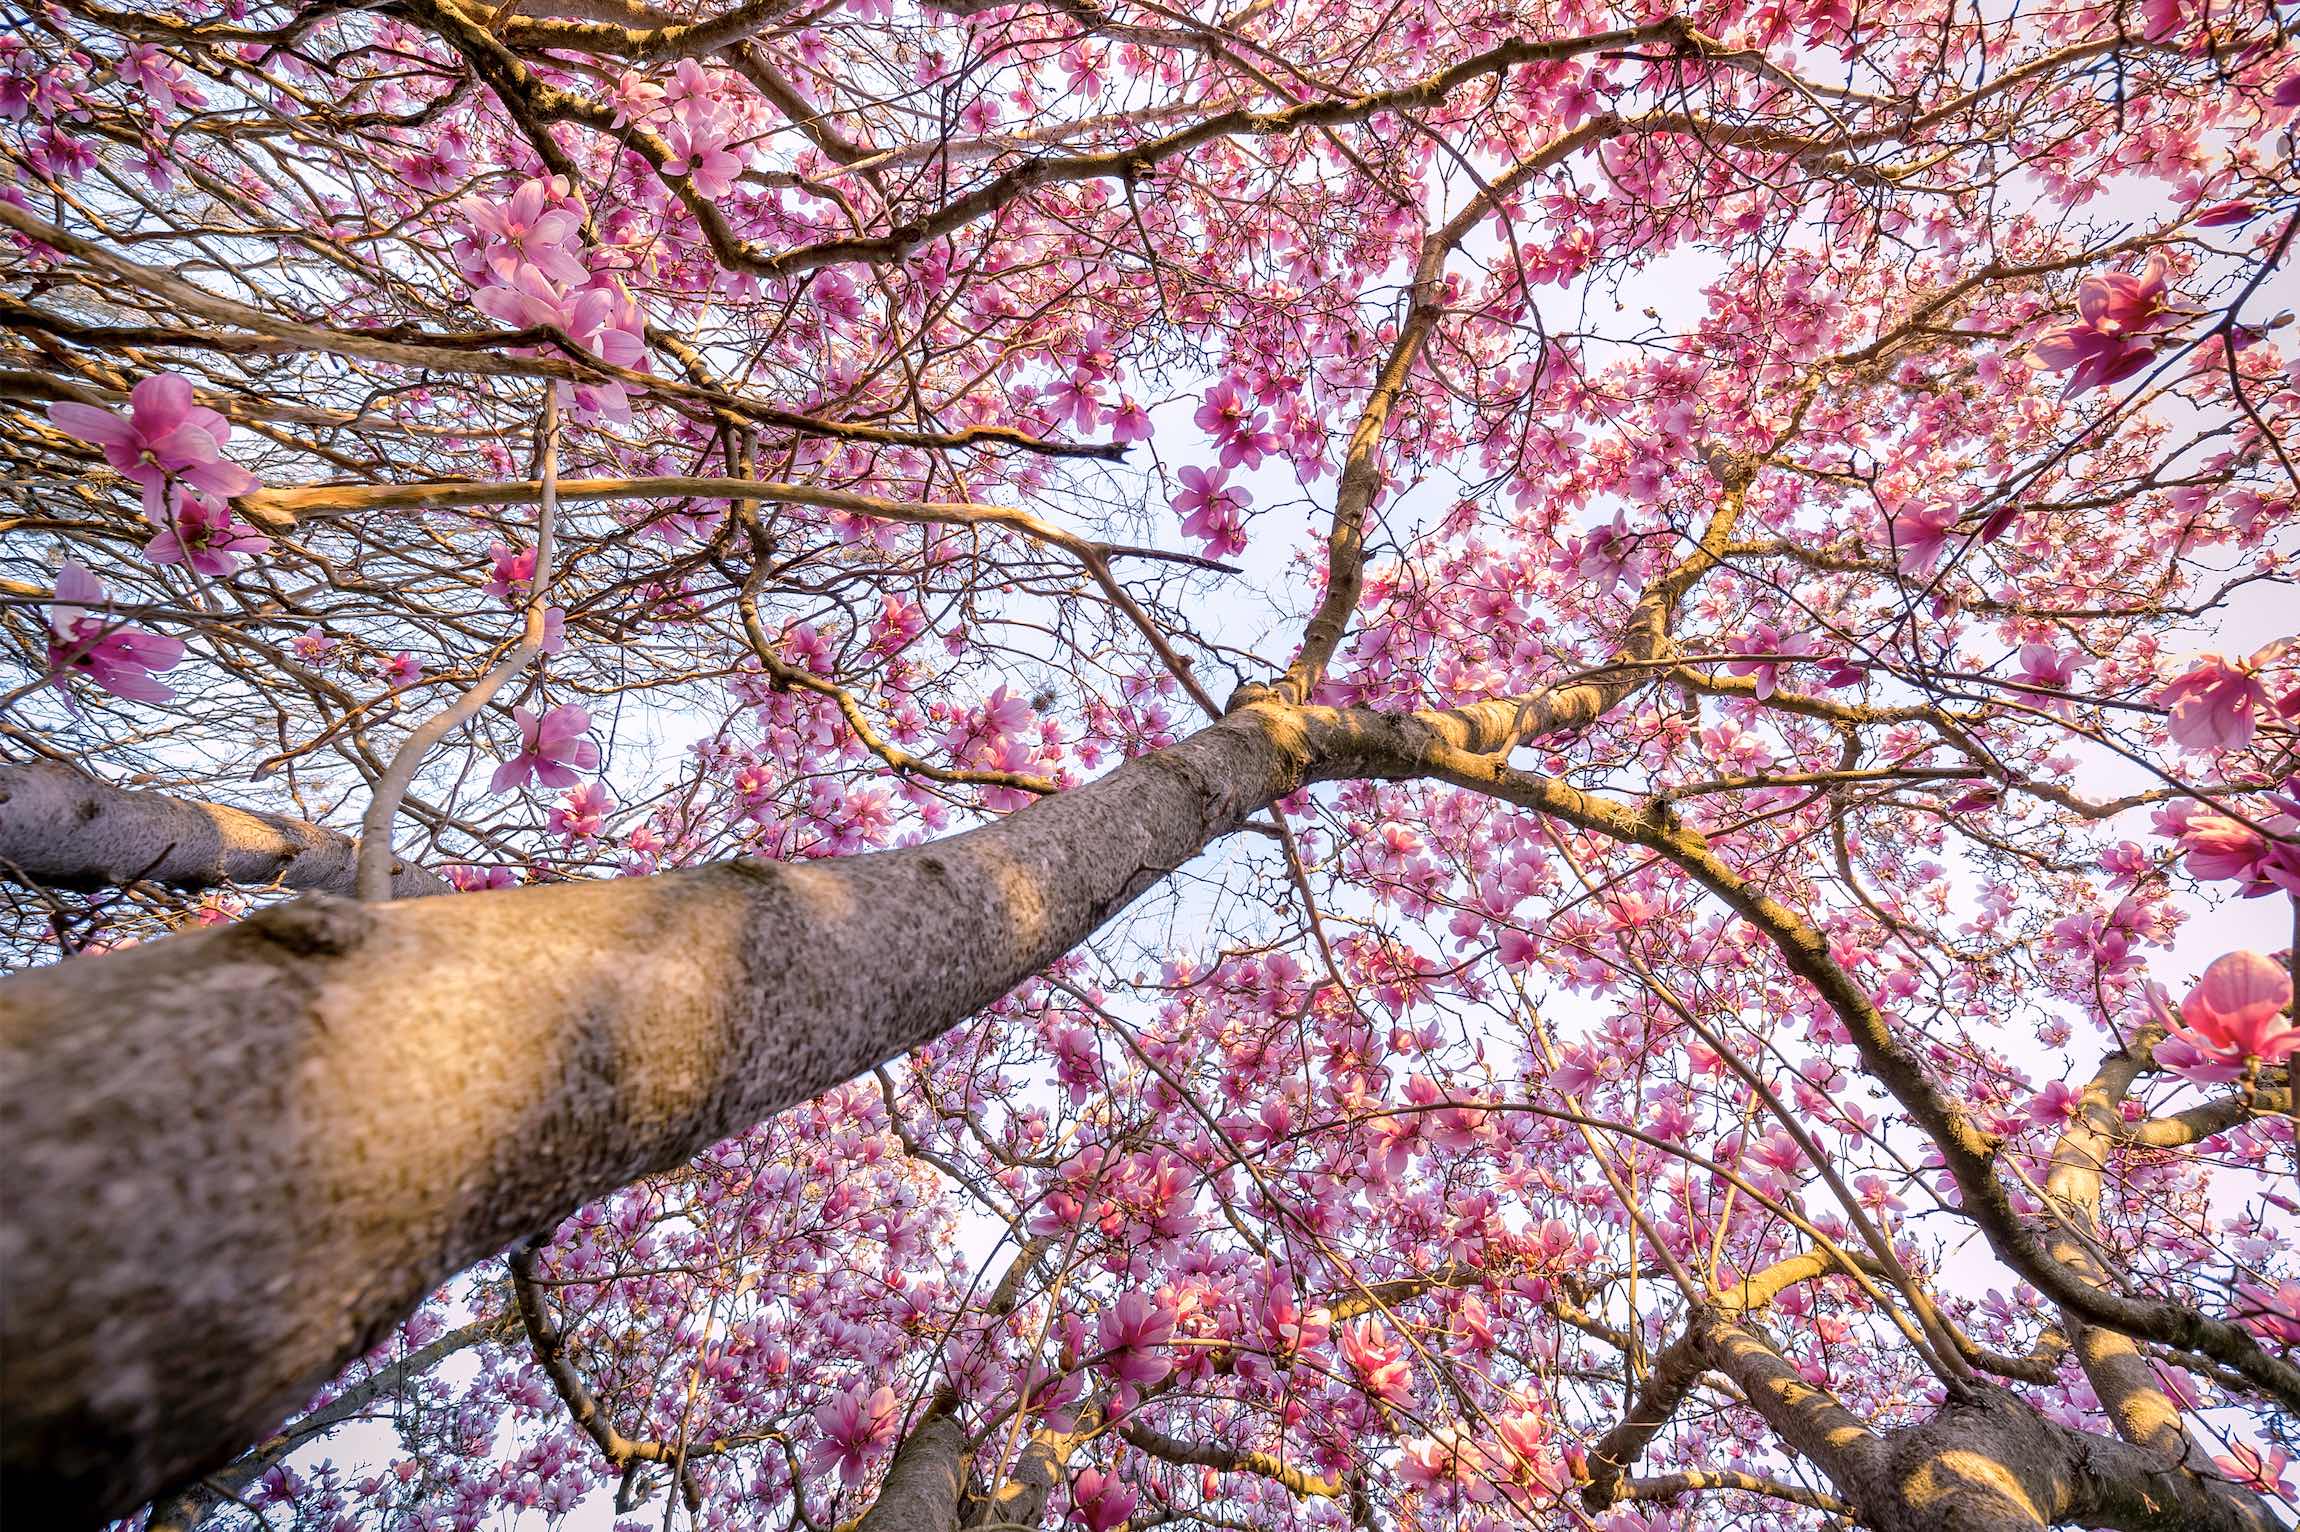 under magnolia trees